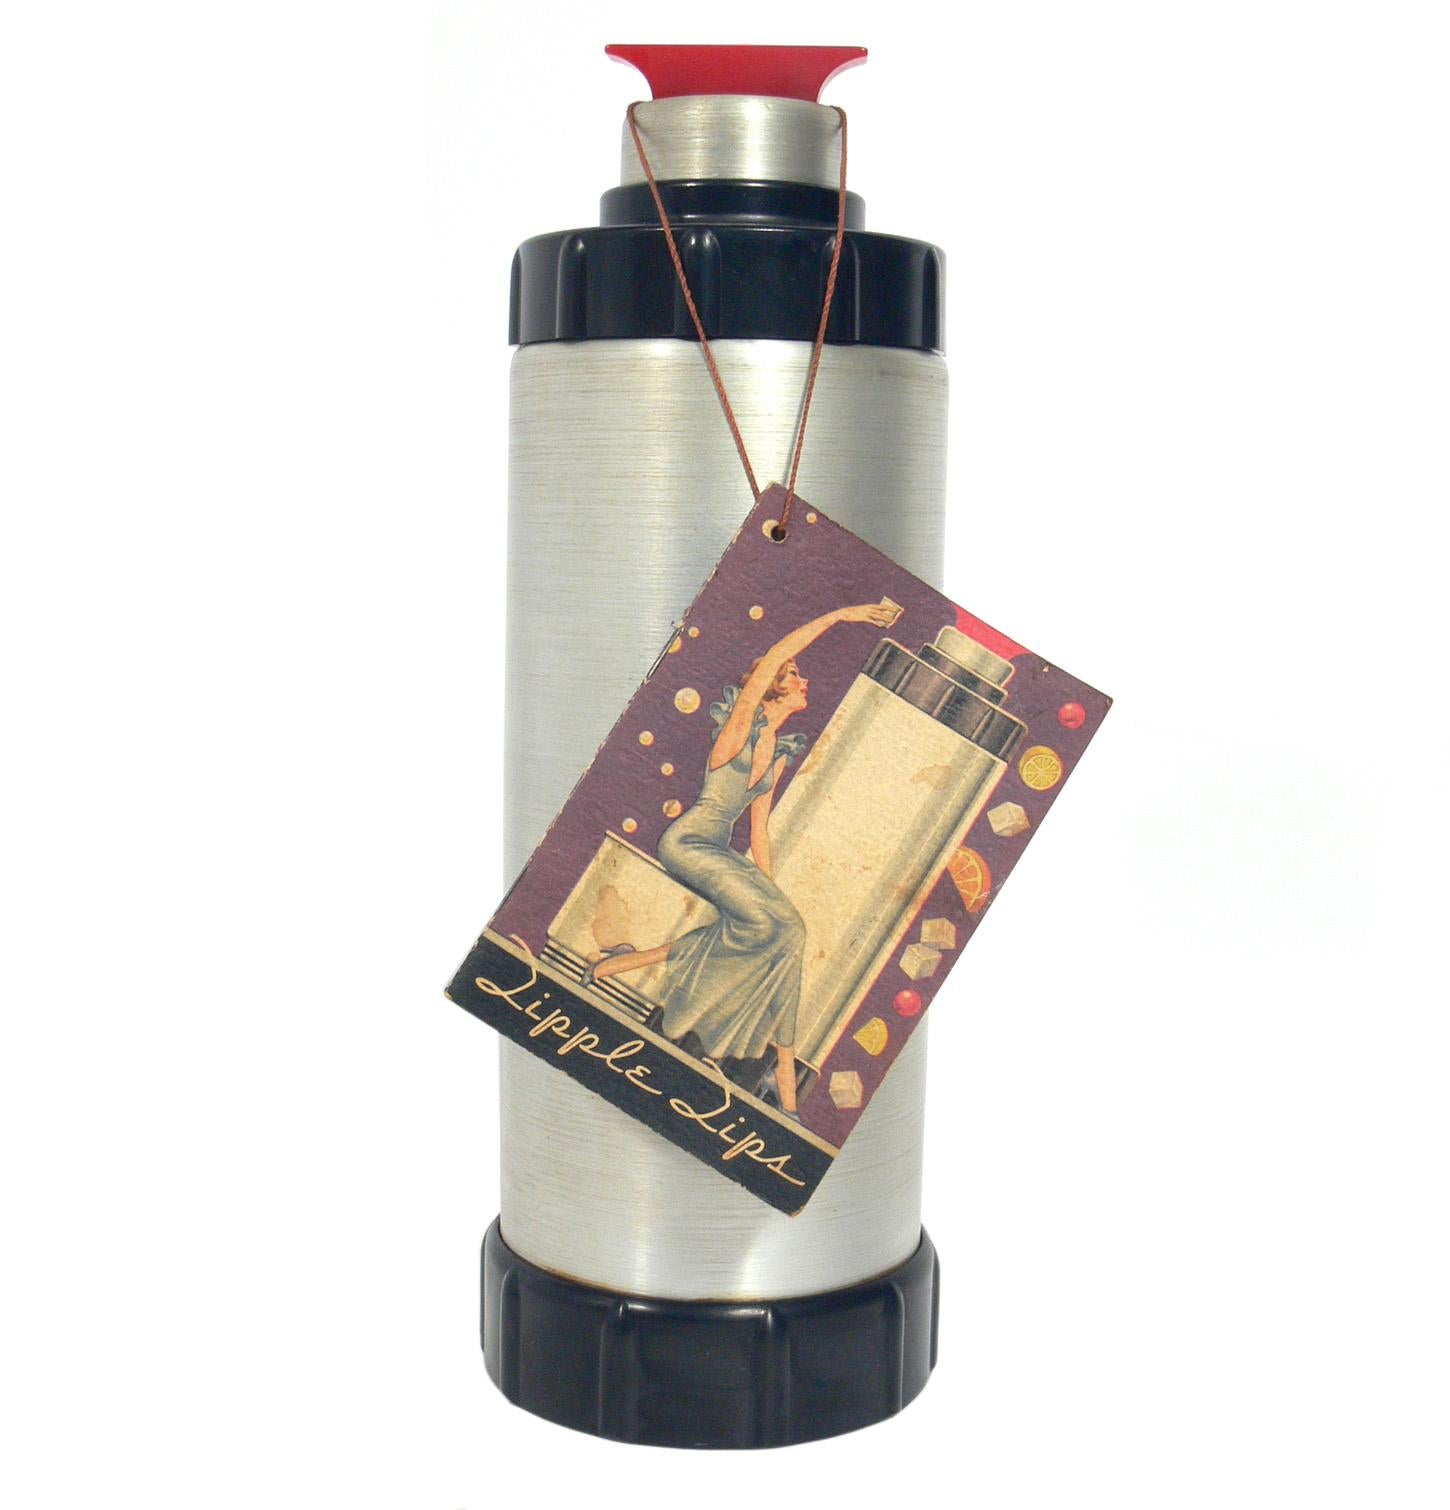 Shaker à cocktail Art déco américain, conçu par Ralph Kirchler pour la société West bend aluminium, vers les années 1930. Magnifique design Art déco en aluminium filé et bakélite rouge. Il est accompagné de son livret d'origine, intitulé 